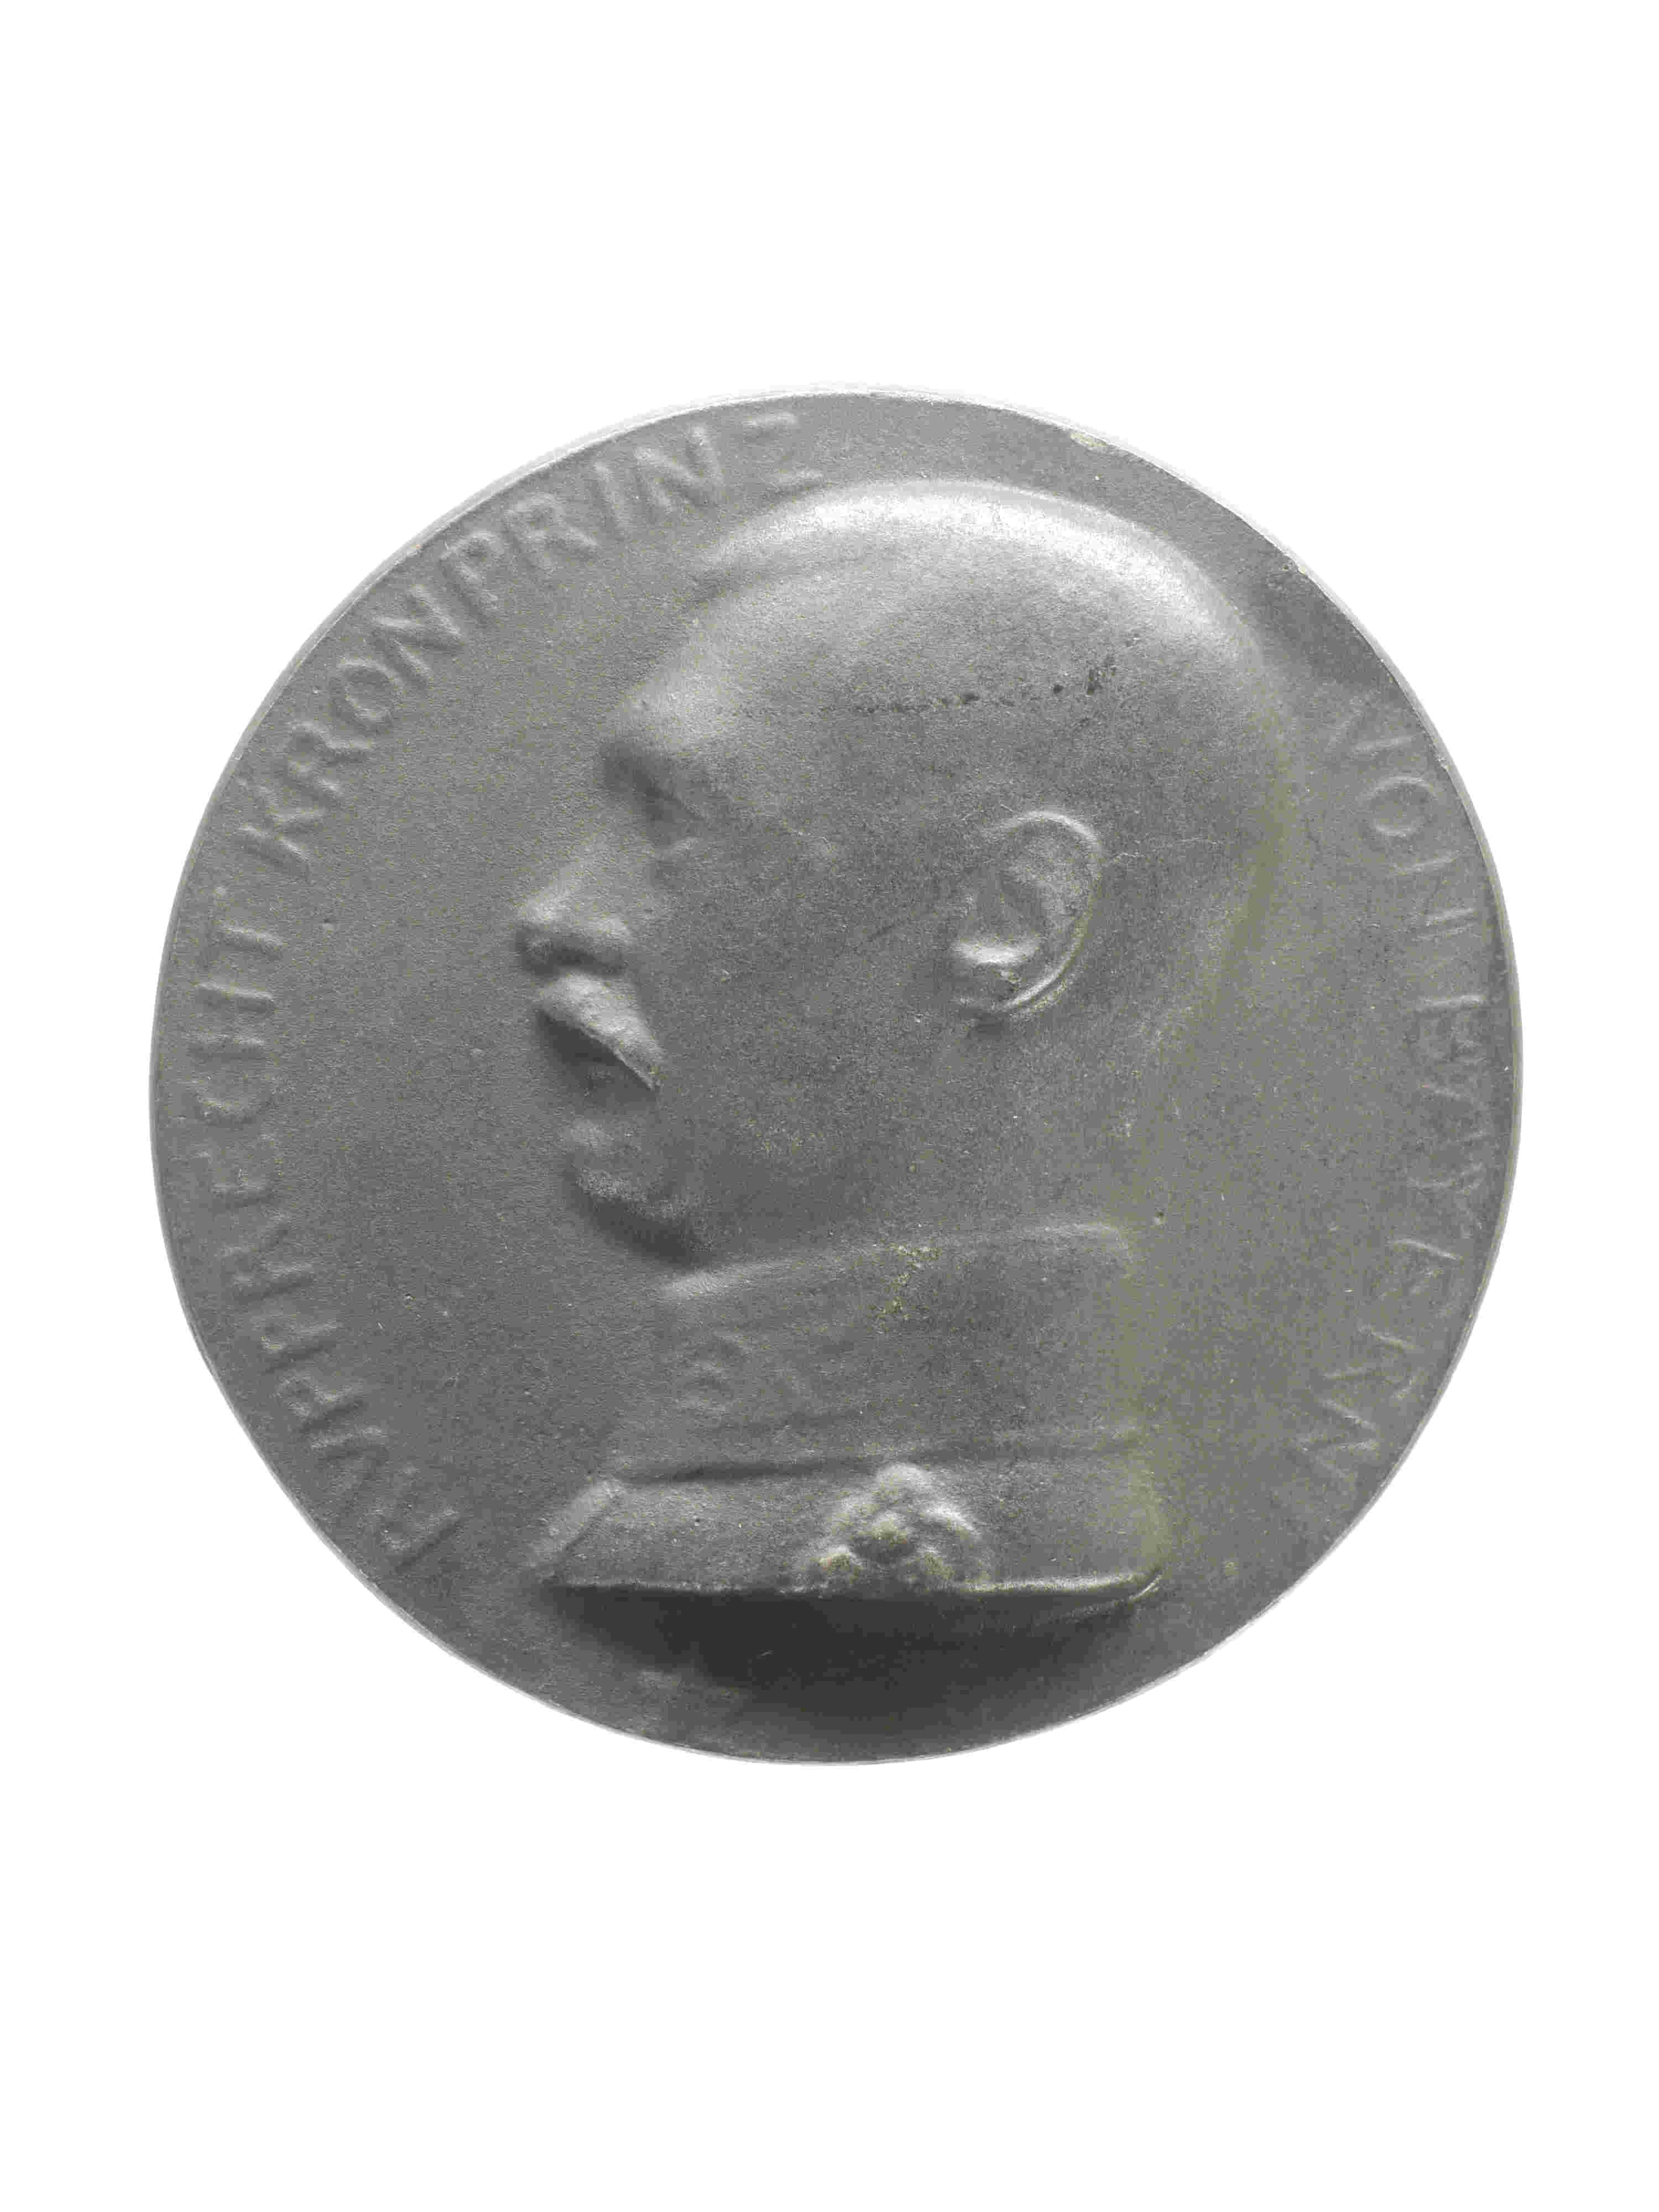 Medaille "Kronprinz Rupprecht/6. Armee" (Historisches Museum der Pfalz, Speyer CC BY)